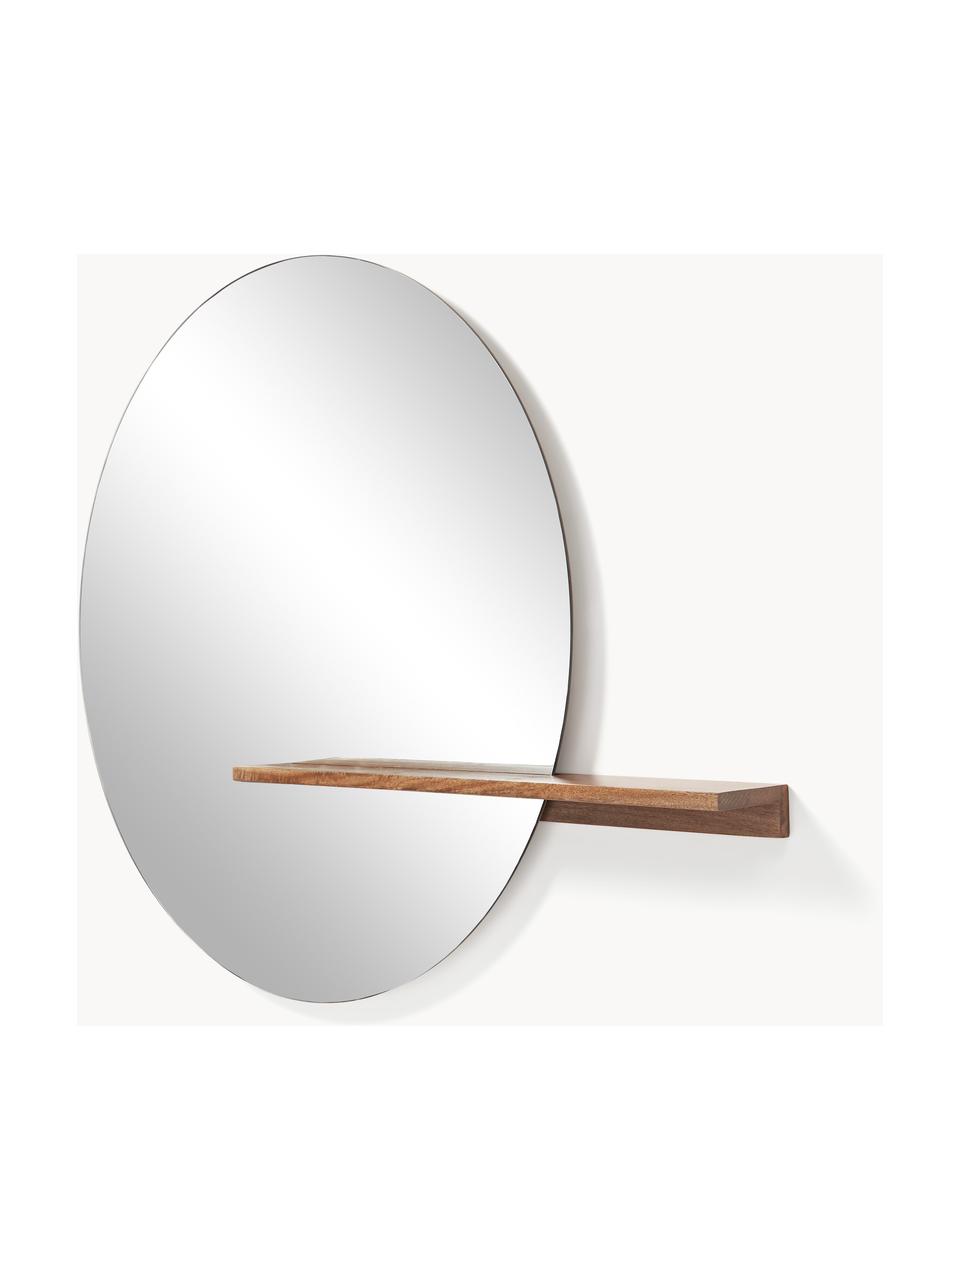 Velké nástěnné zrcadlo s dřevěnou policí Sandro, Mangové dřevo, Š 140 cm, V 110 cm